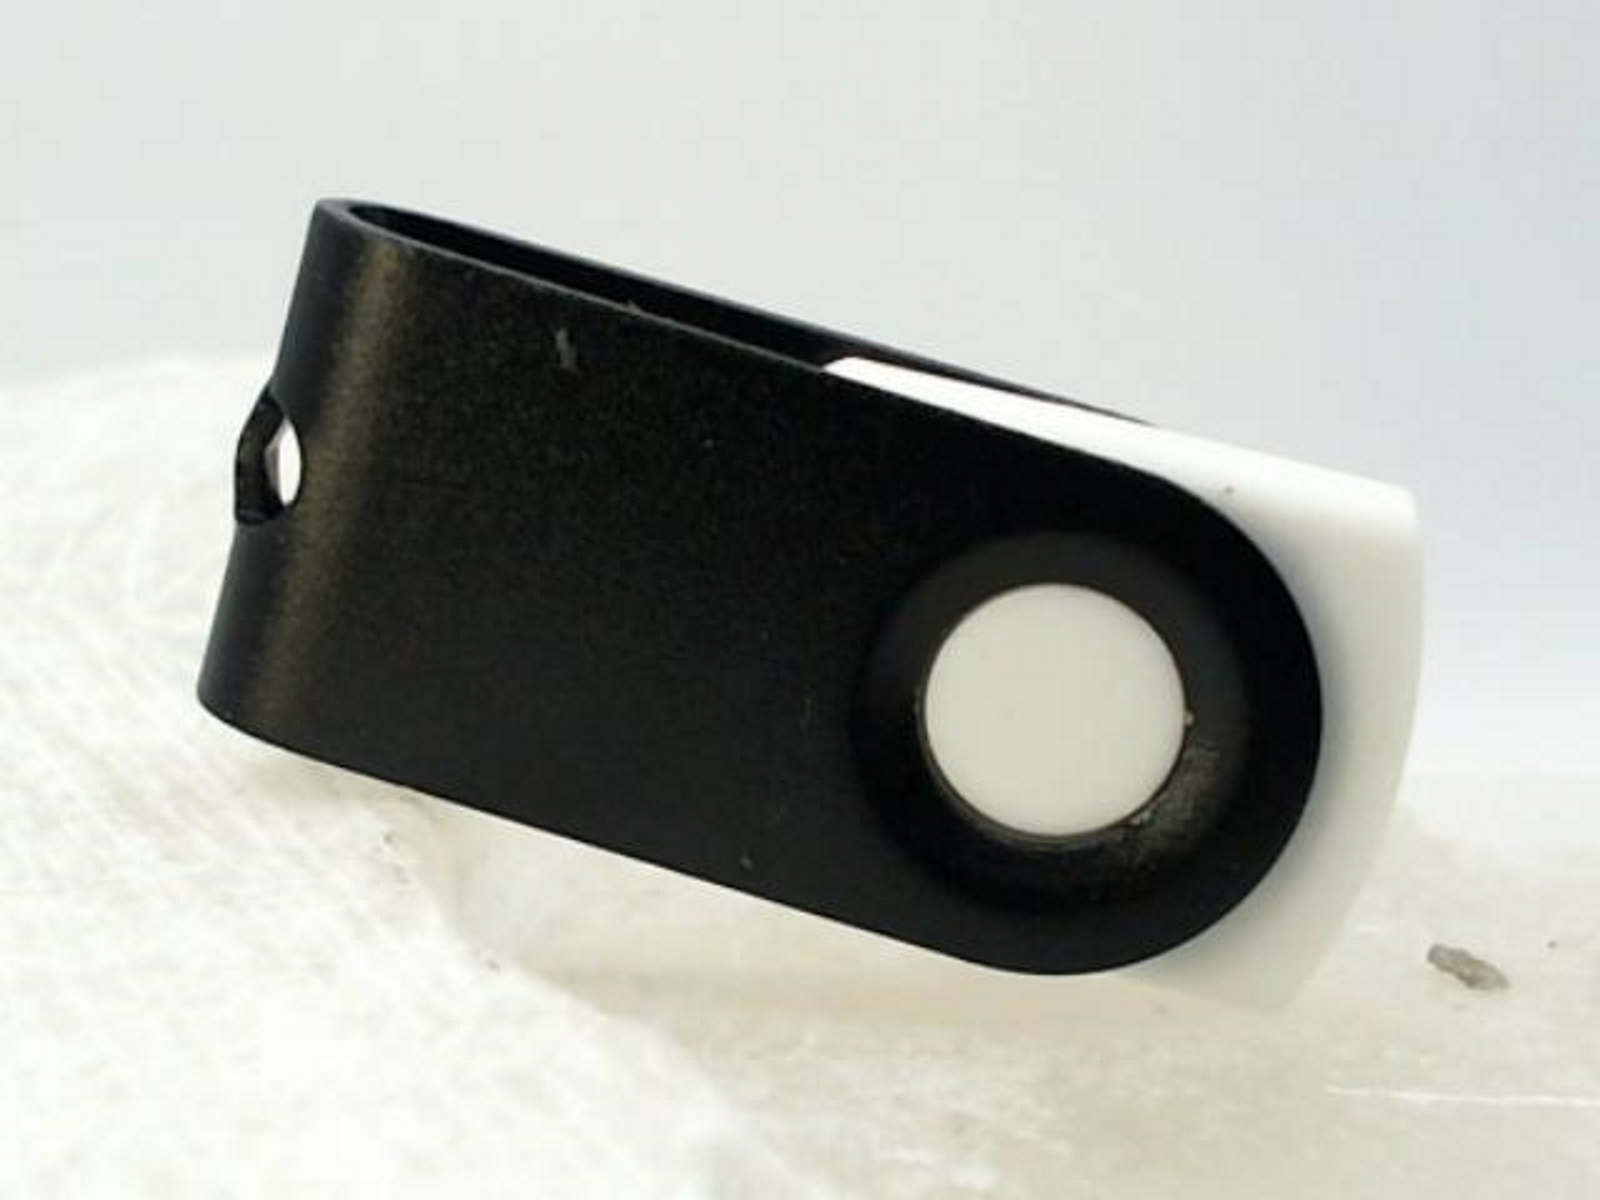 USB GERMANY GB) 32 ® USB-Stick MINI-SWIVEL (Weiß-Schwarz